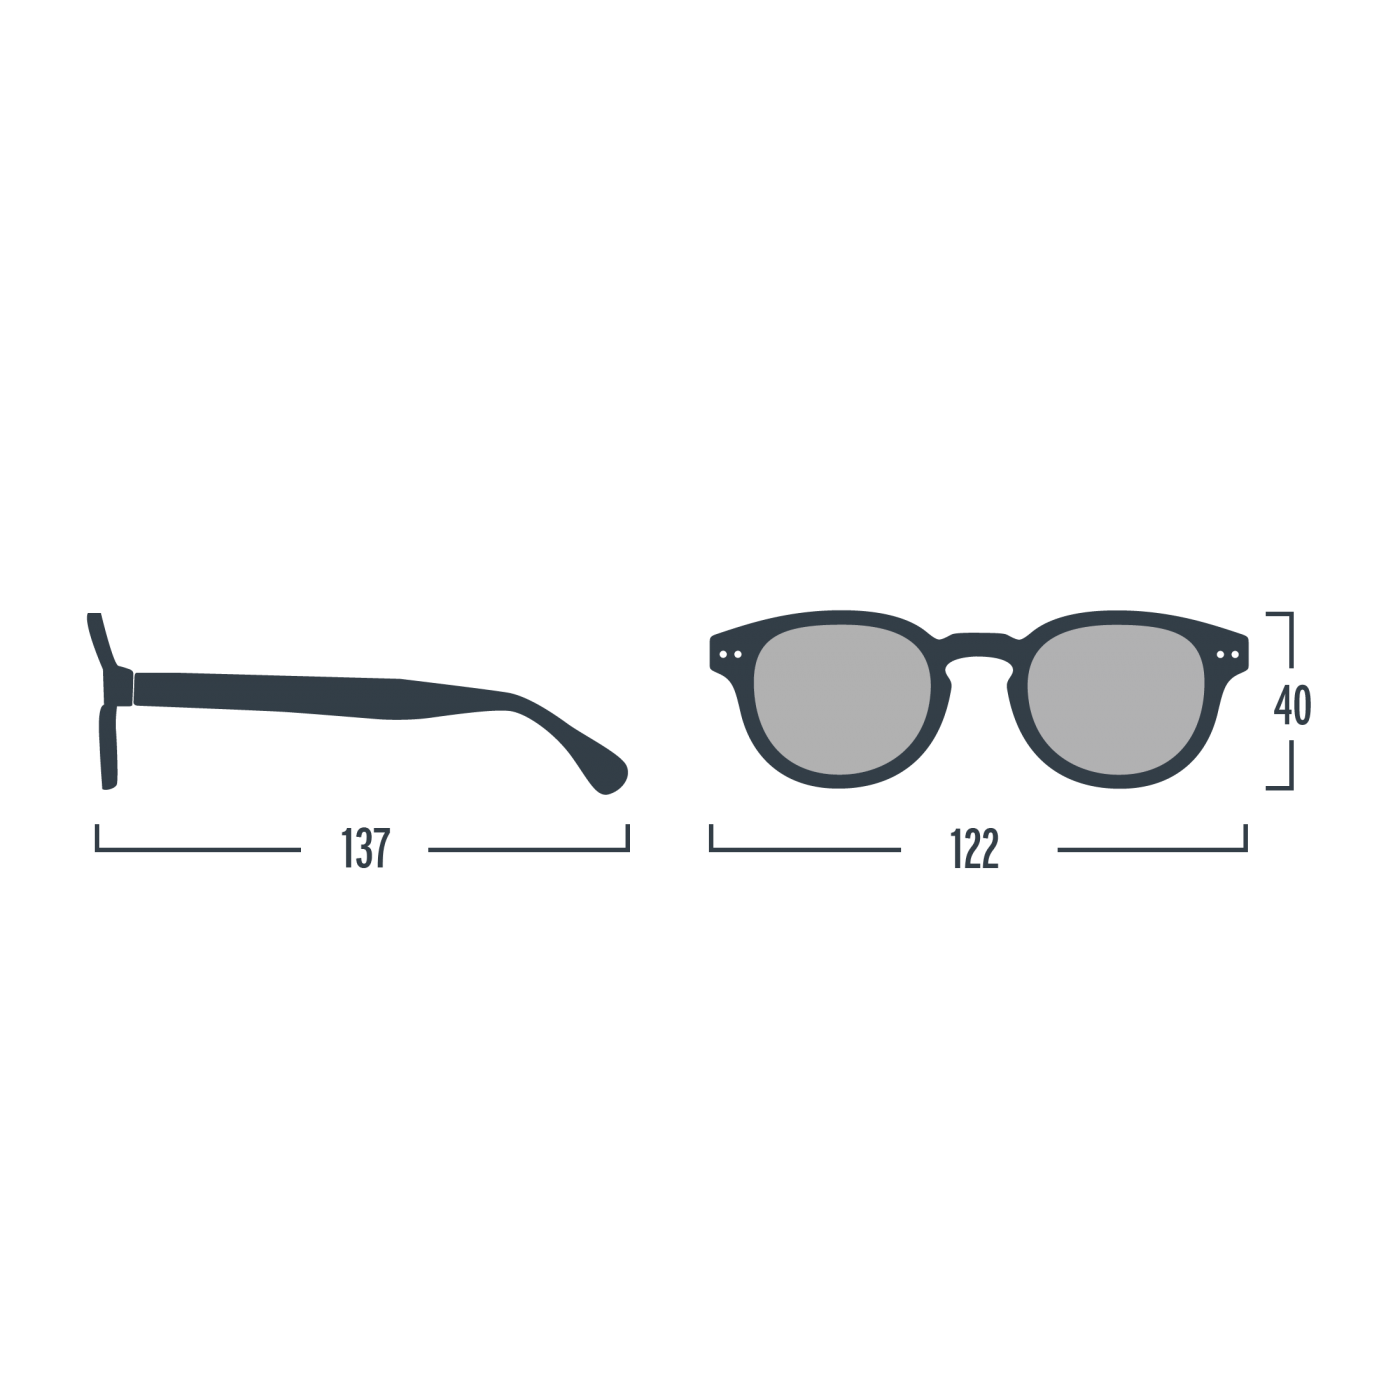 Óculos de Sol Green Cristal #D para crianças dos 5 aos 10 anos